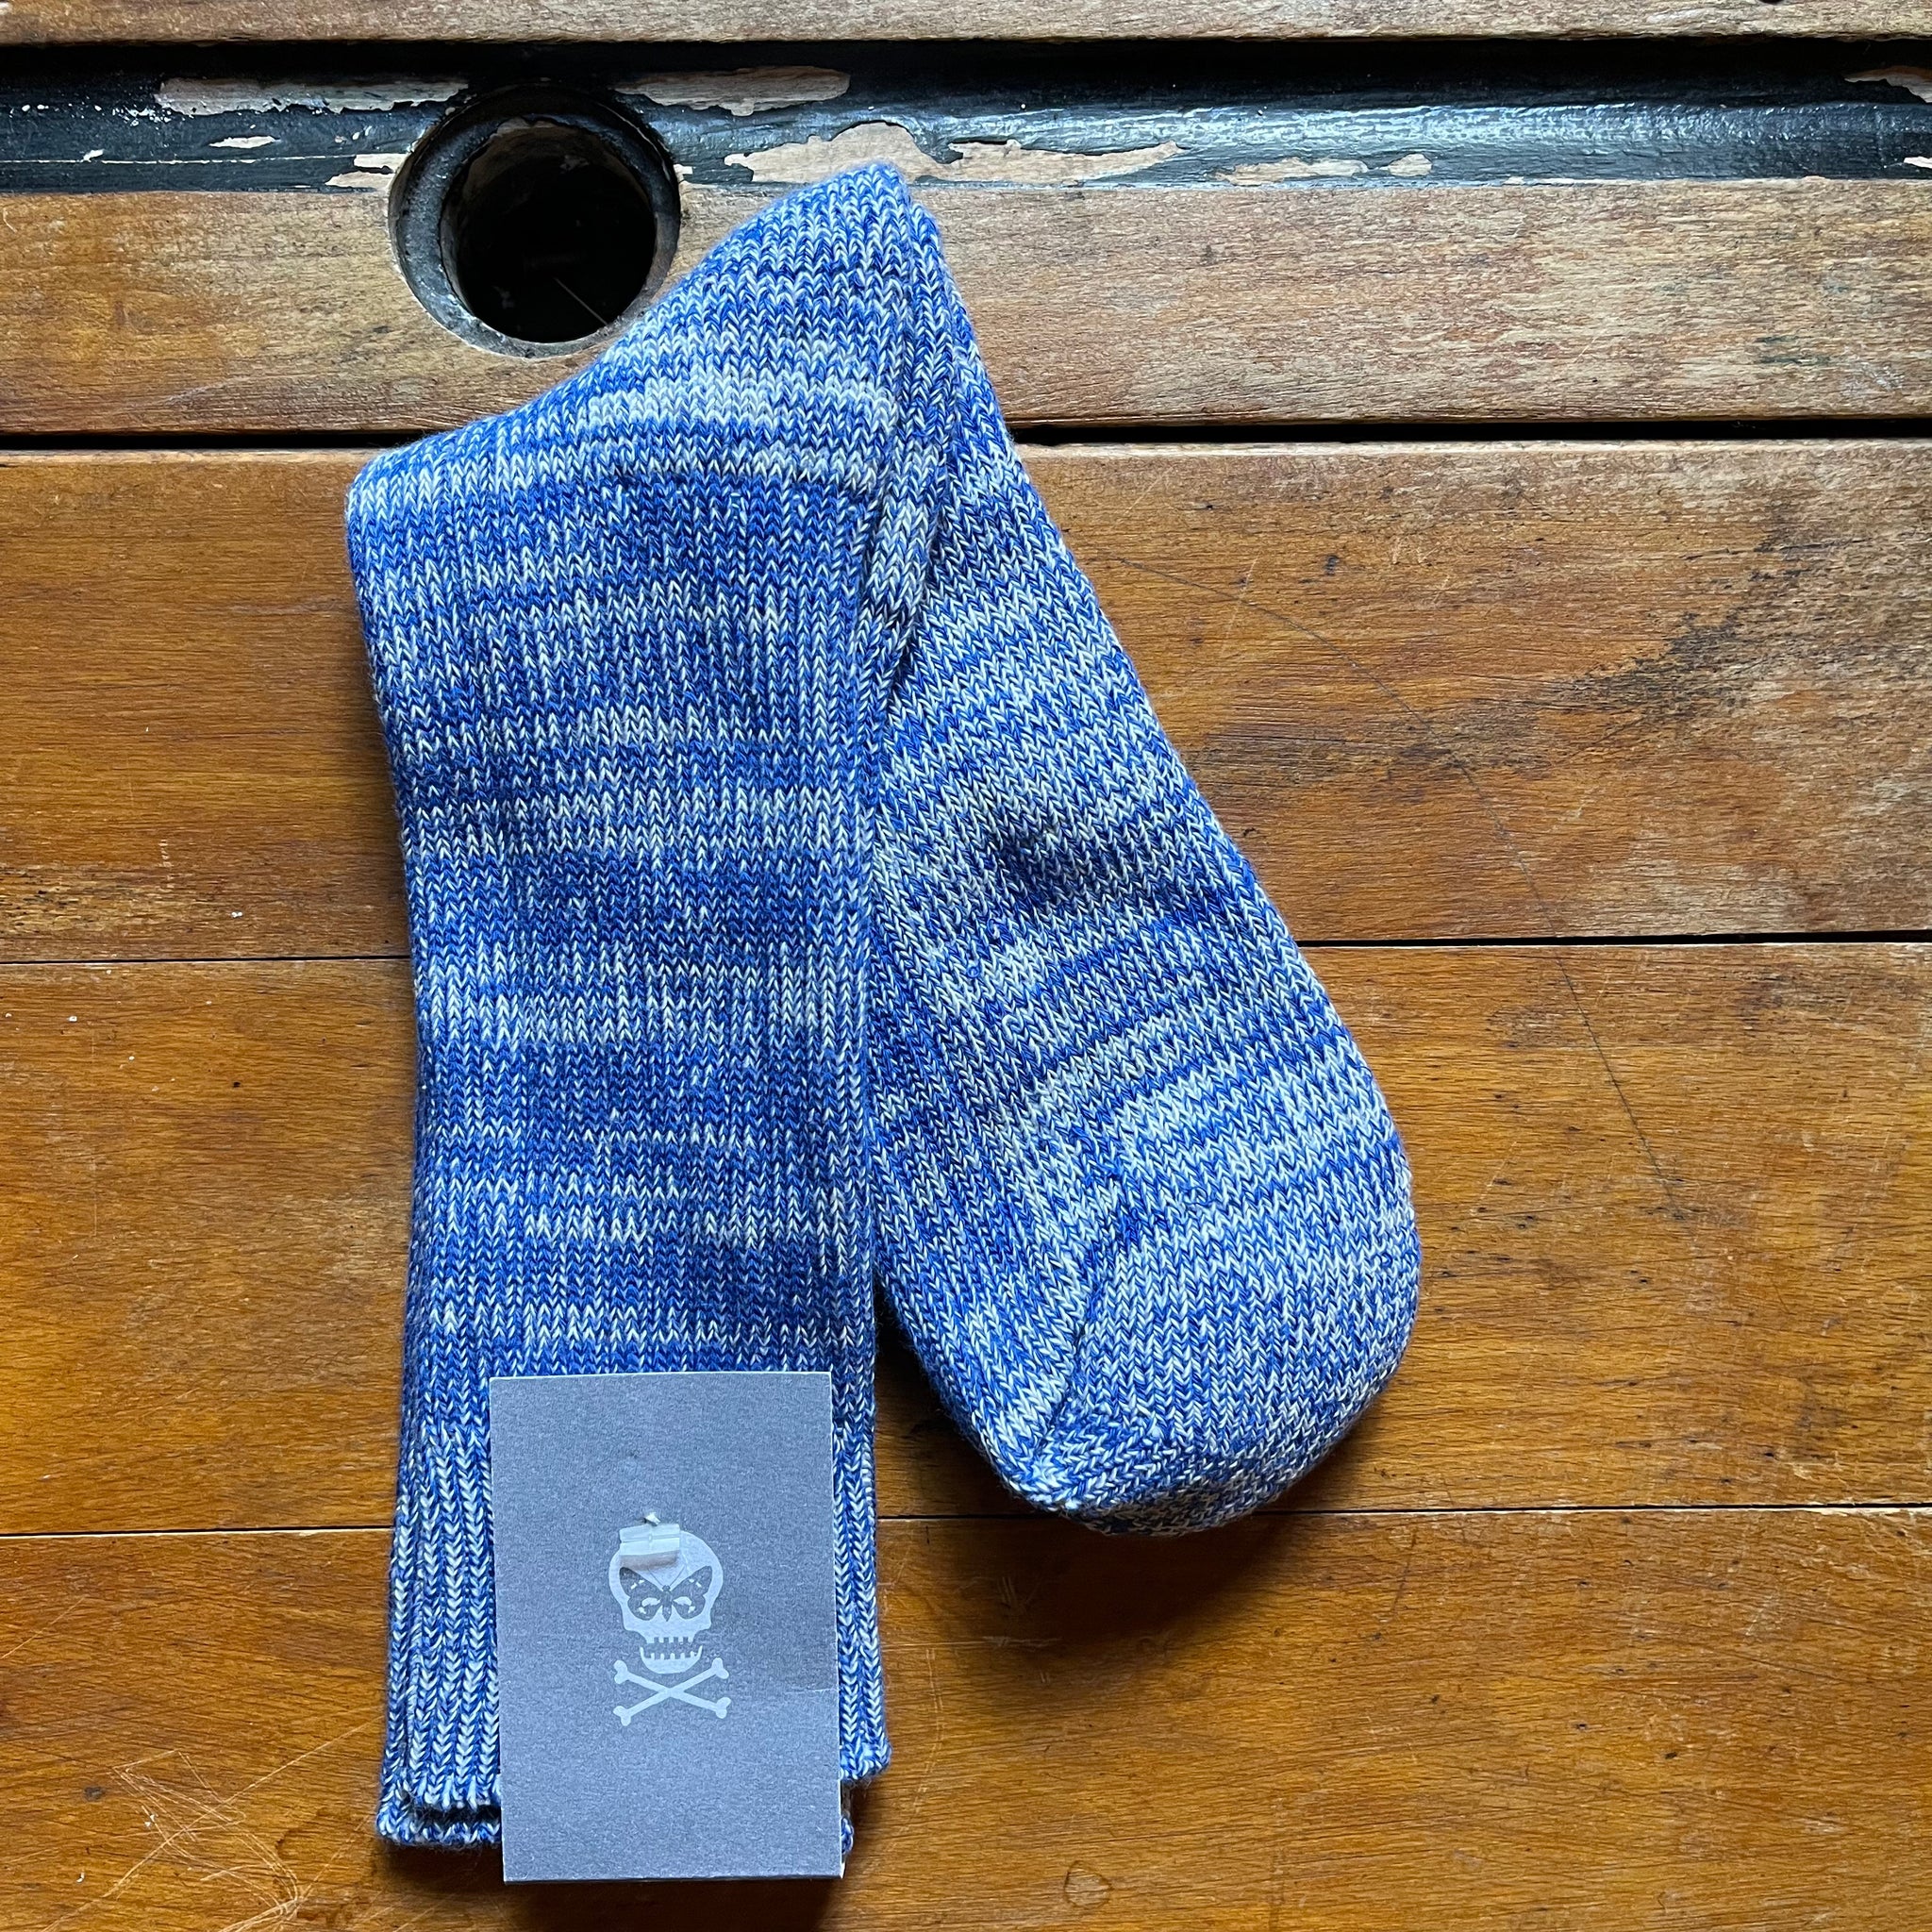 Regent cotton socks in marled blue